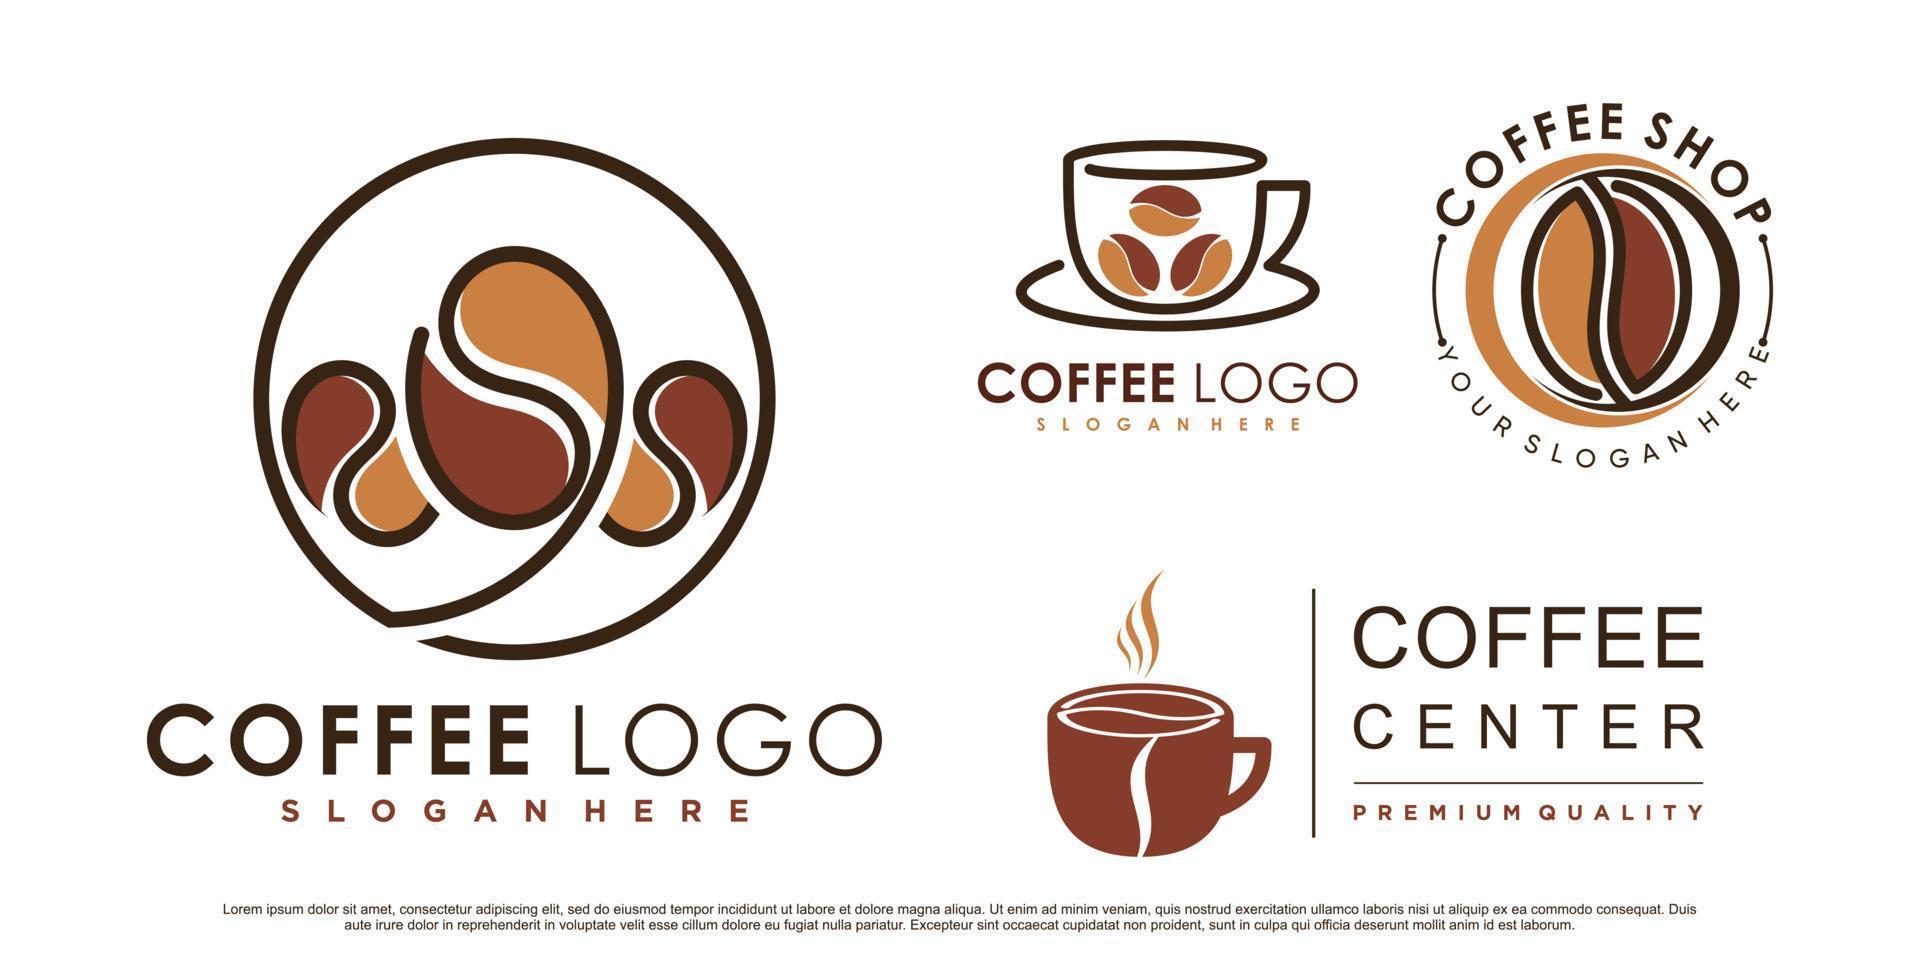 icona del caffè set logo e ispirazione per il design del logo della caffetteria con elemento creativo vettore premium